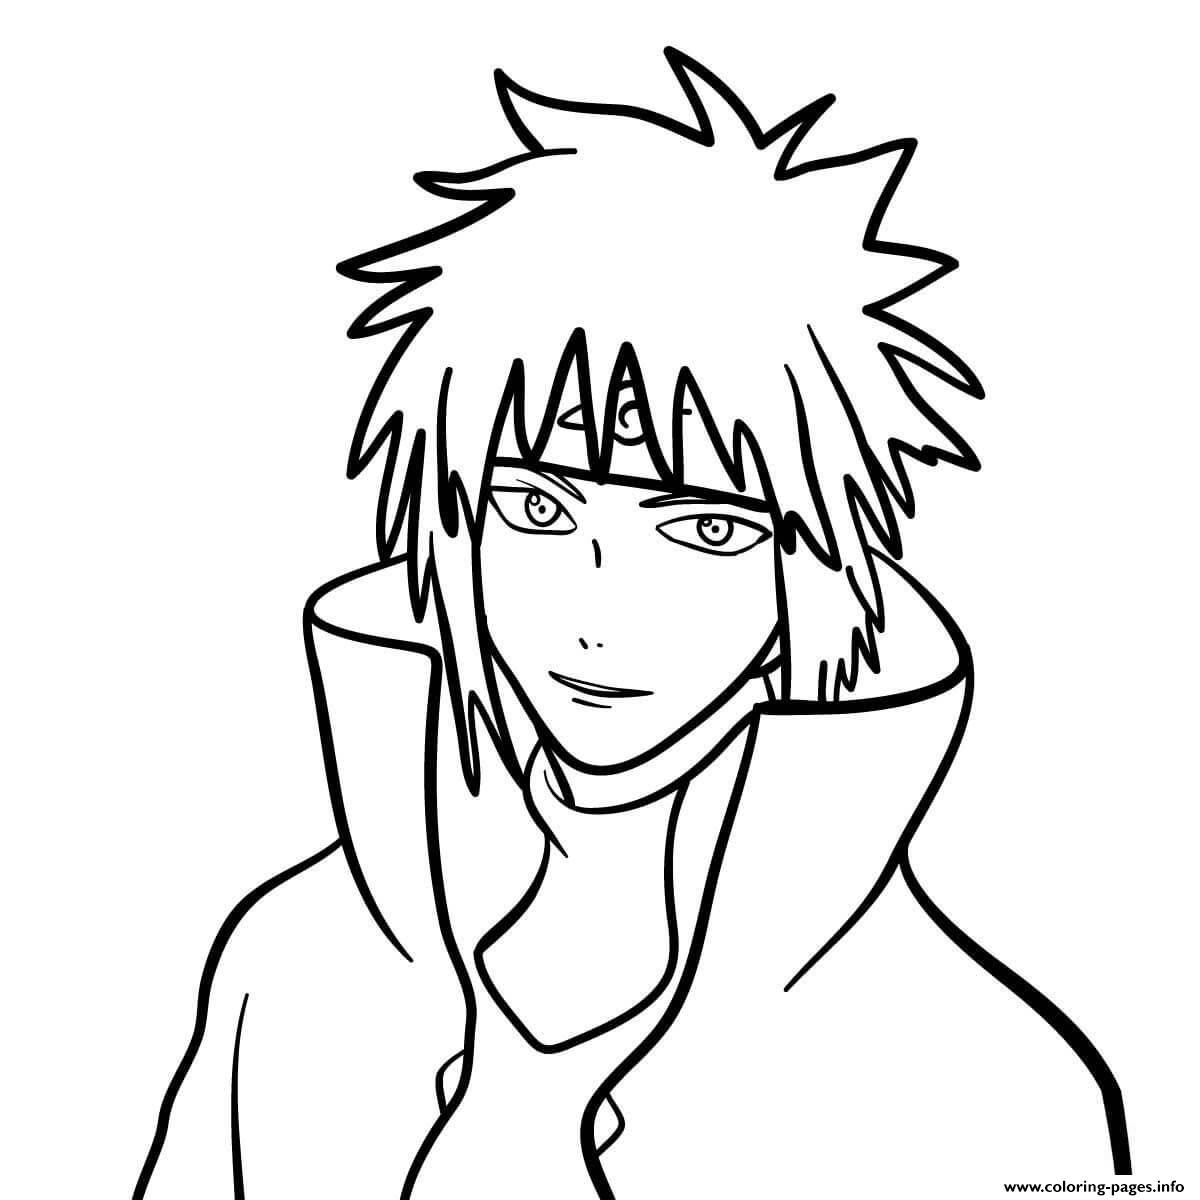 Minato Naruto coloring